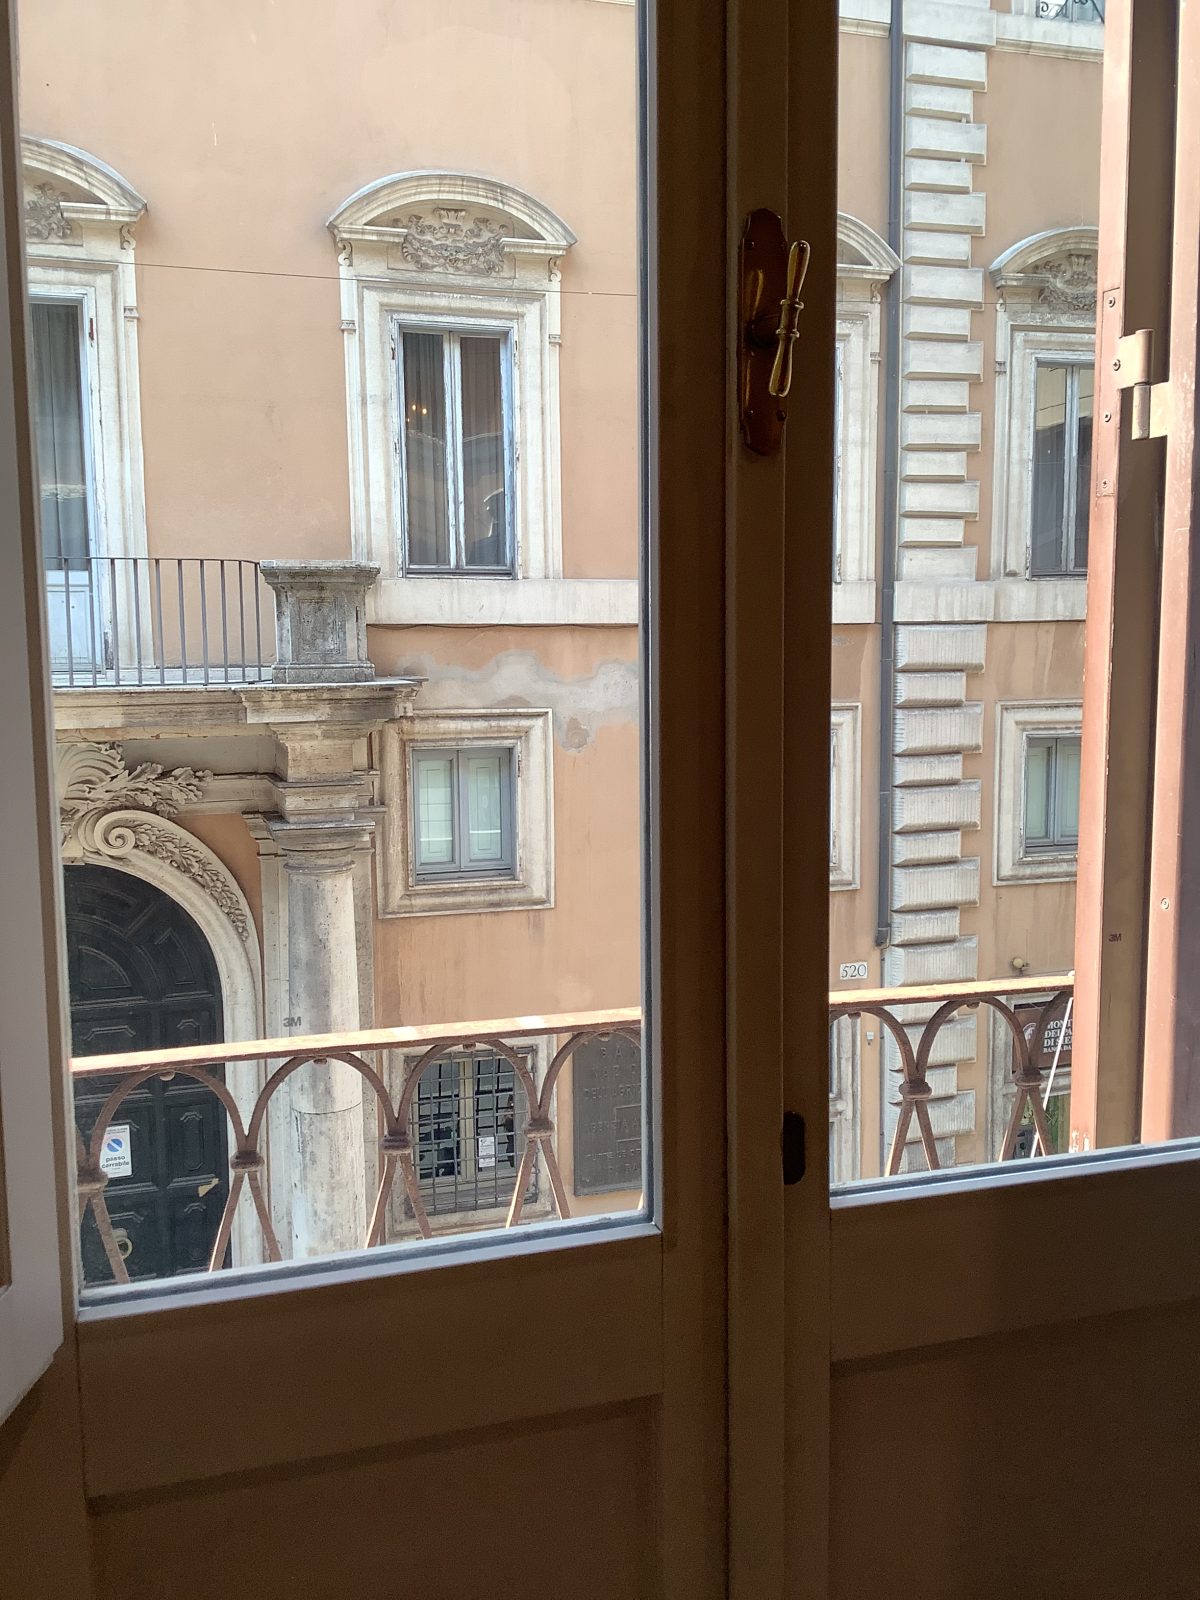 Muutama kurkistus matkustavaisten kirjailijoiden ikkunoista Roomassa